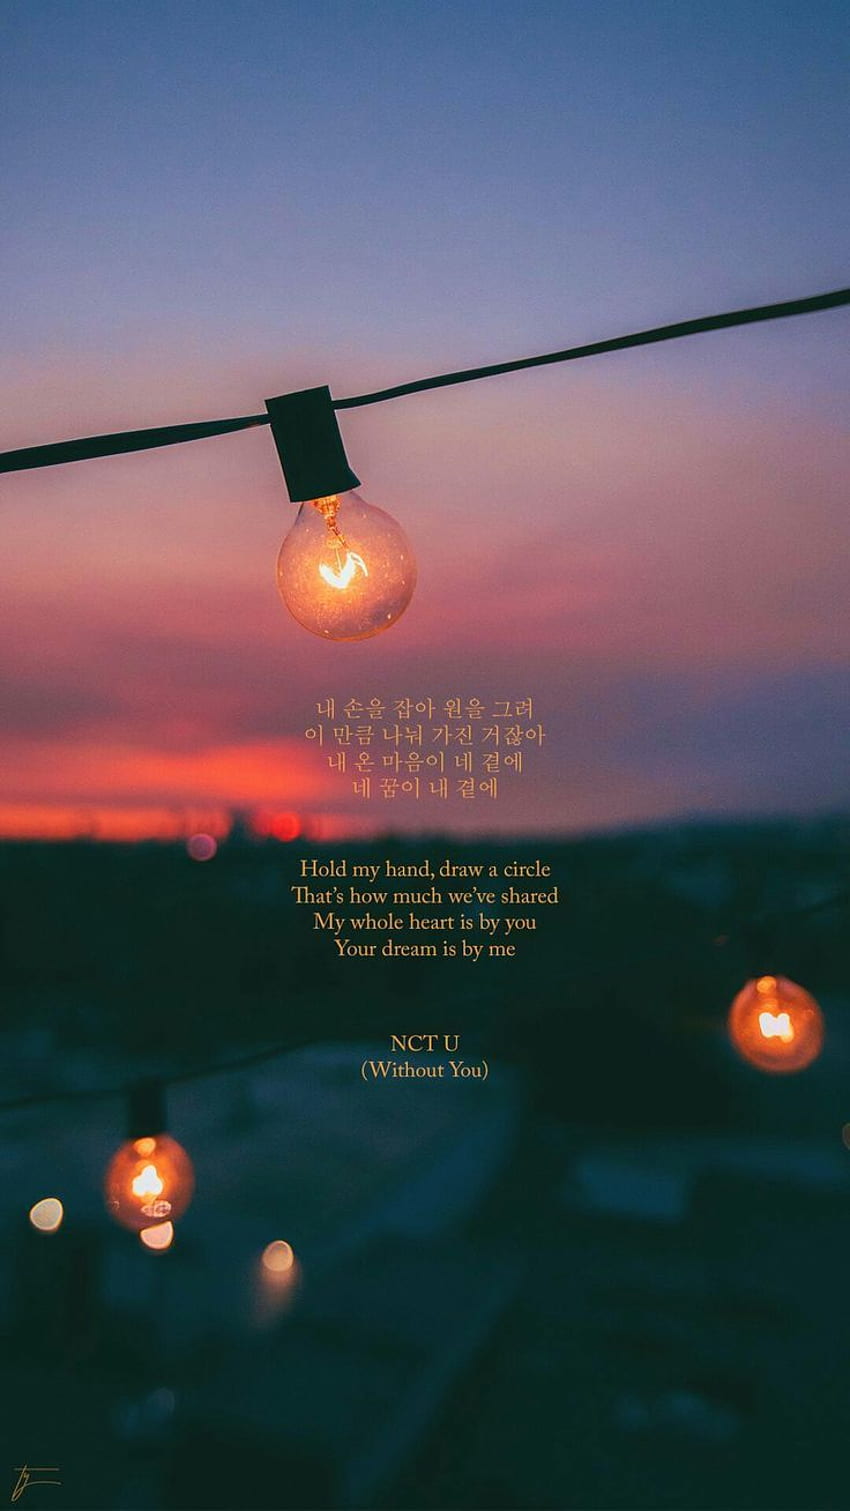 NCT U - ohne dich. Şarkı Sözü, Kutipan Şarkısı, Şarkı Sözü, NCT Şarkı Sözü HD telefon duvar kağıdı